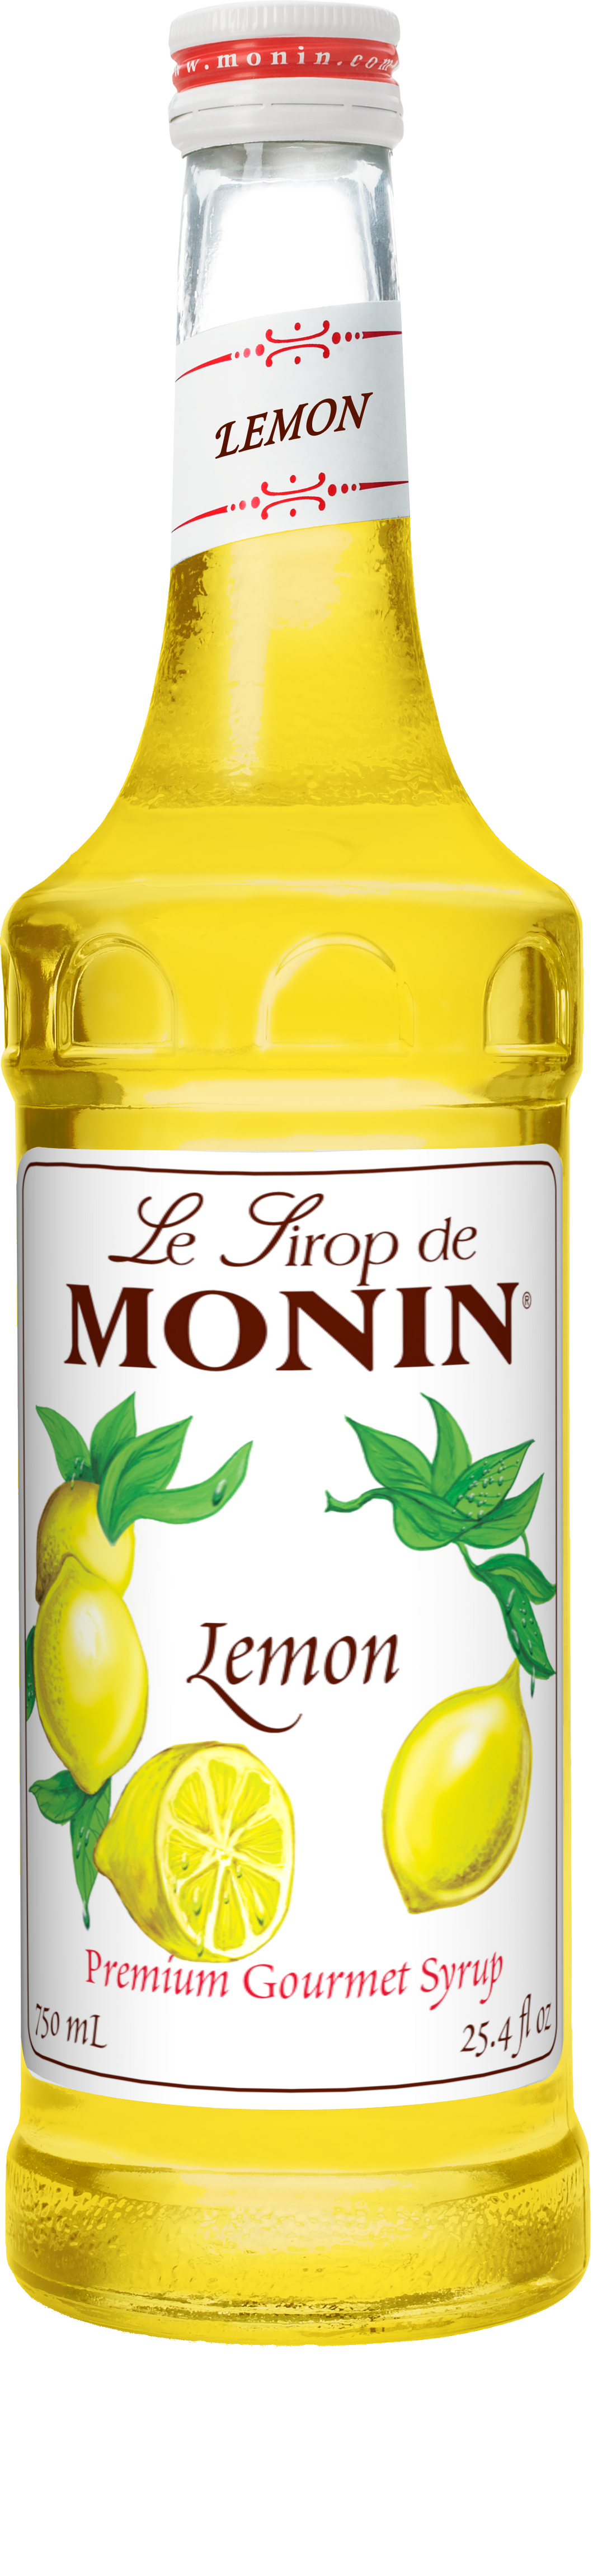 Le Concentrate de Monin Lemon Tea (750ml)